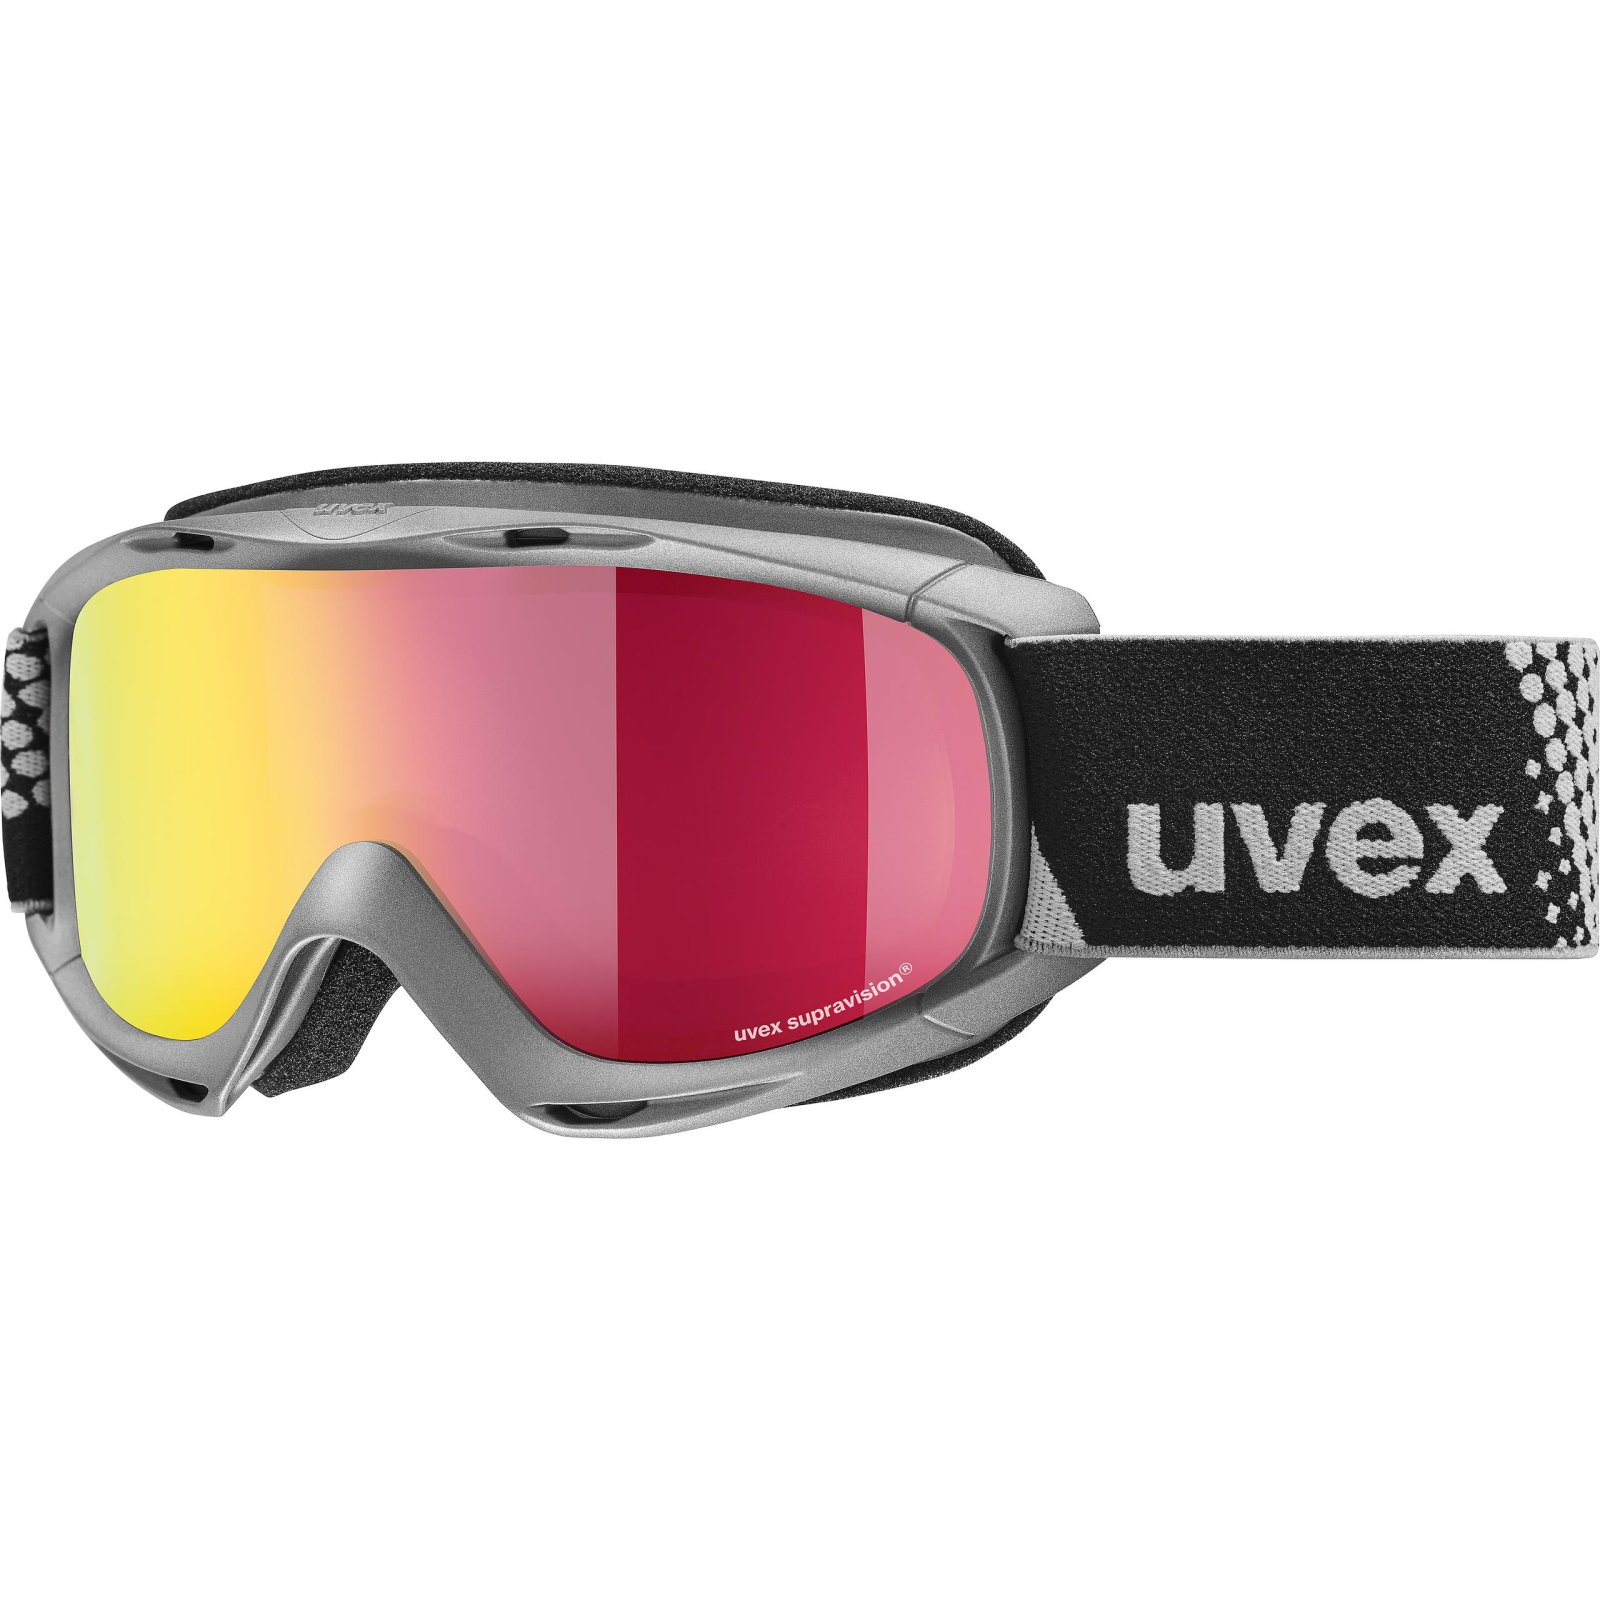 Dětské lyžařské brýle UVEX slider FM 19/20